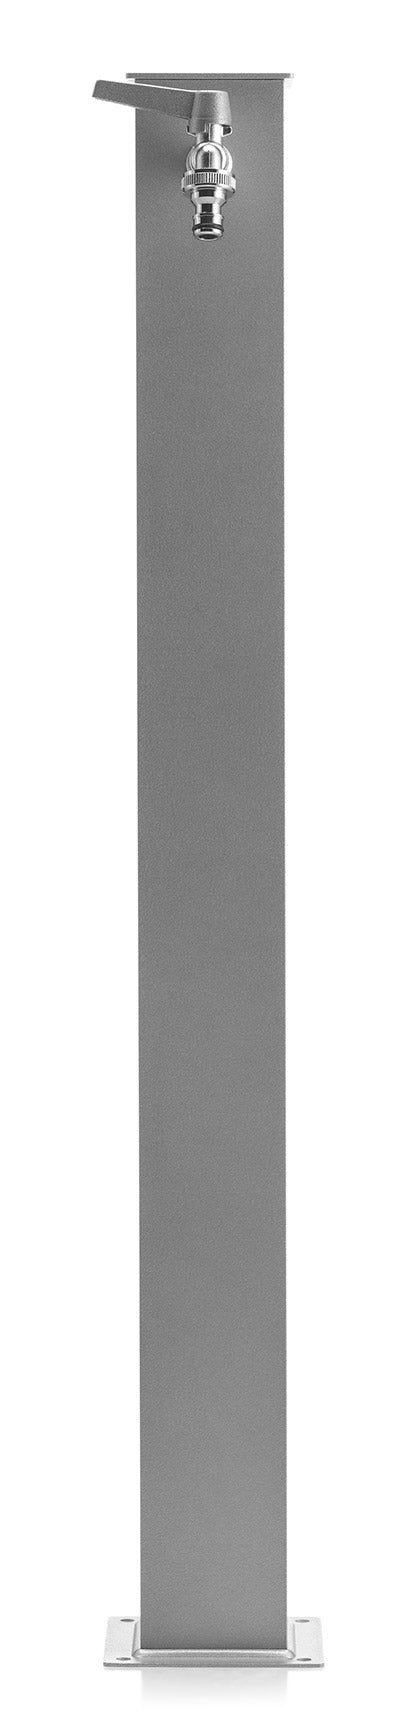 Fontana da Giardino con Rubinetto Belfer 42/Q Alluminio-1